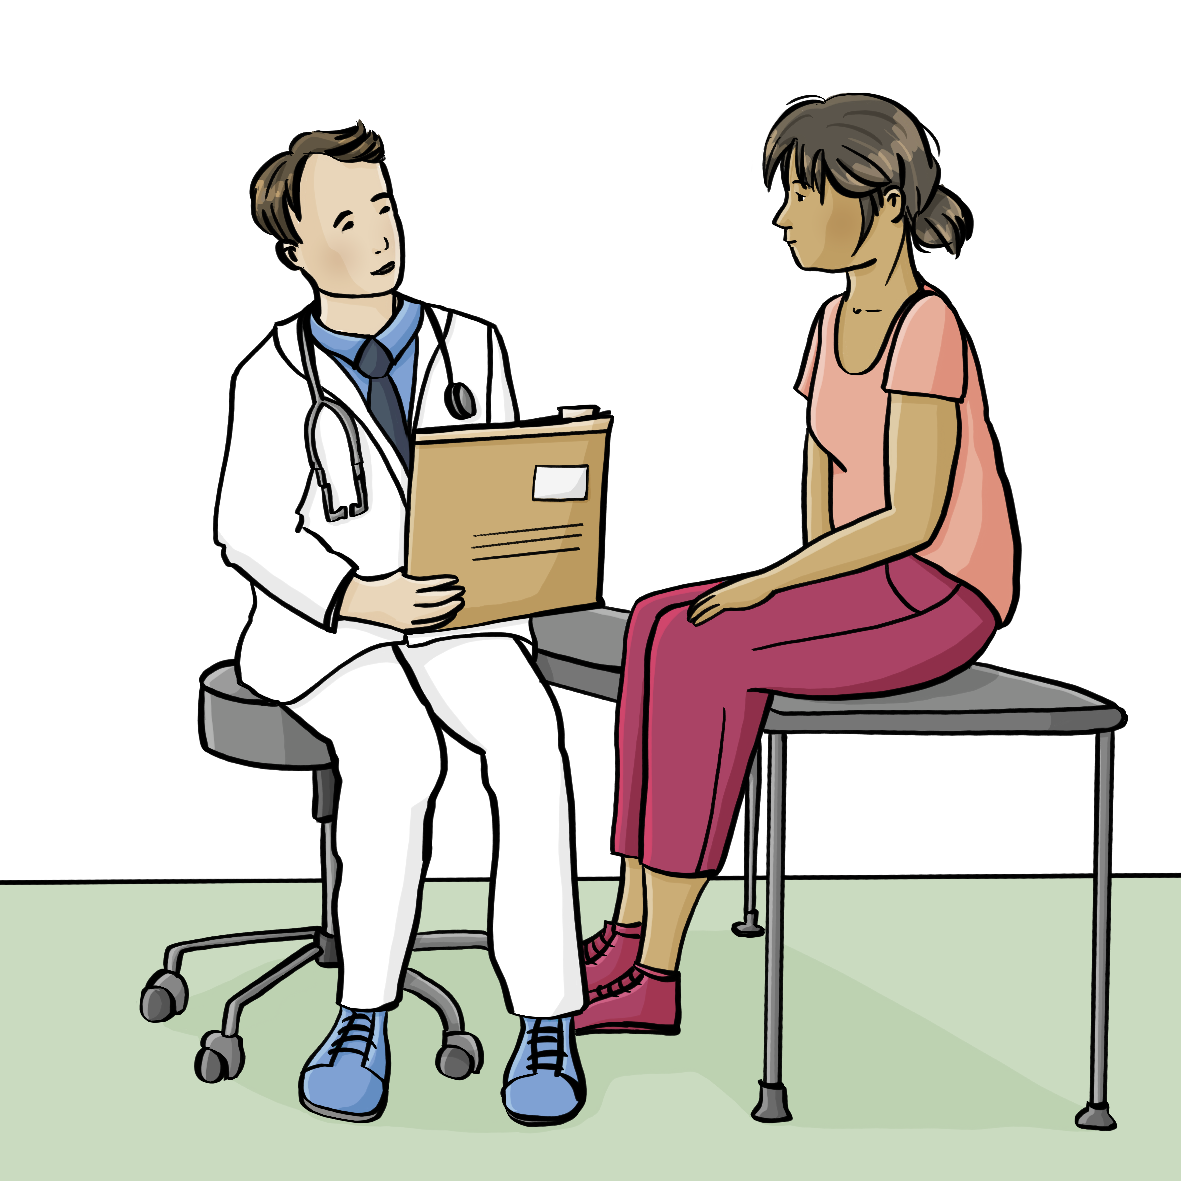 Eine Frau sitzt auf einer Untersuchungsliege. Vor ihr sitzt ein Arzt mit einer Patientenakte in der Hand. 